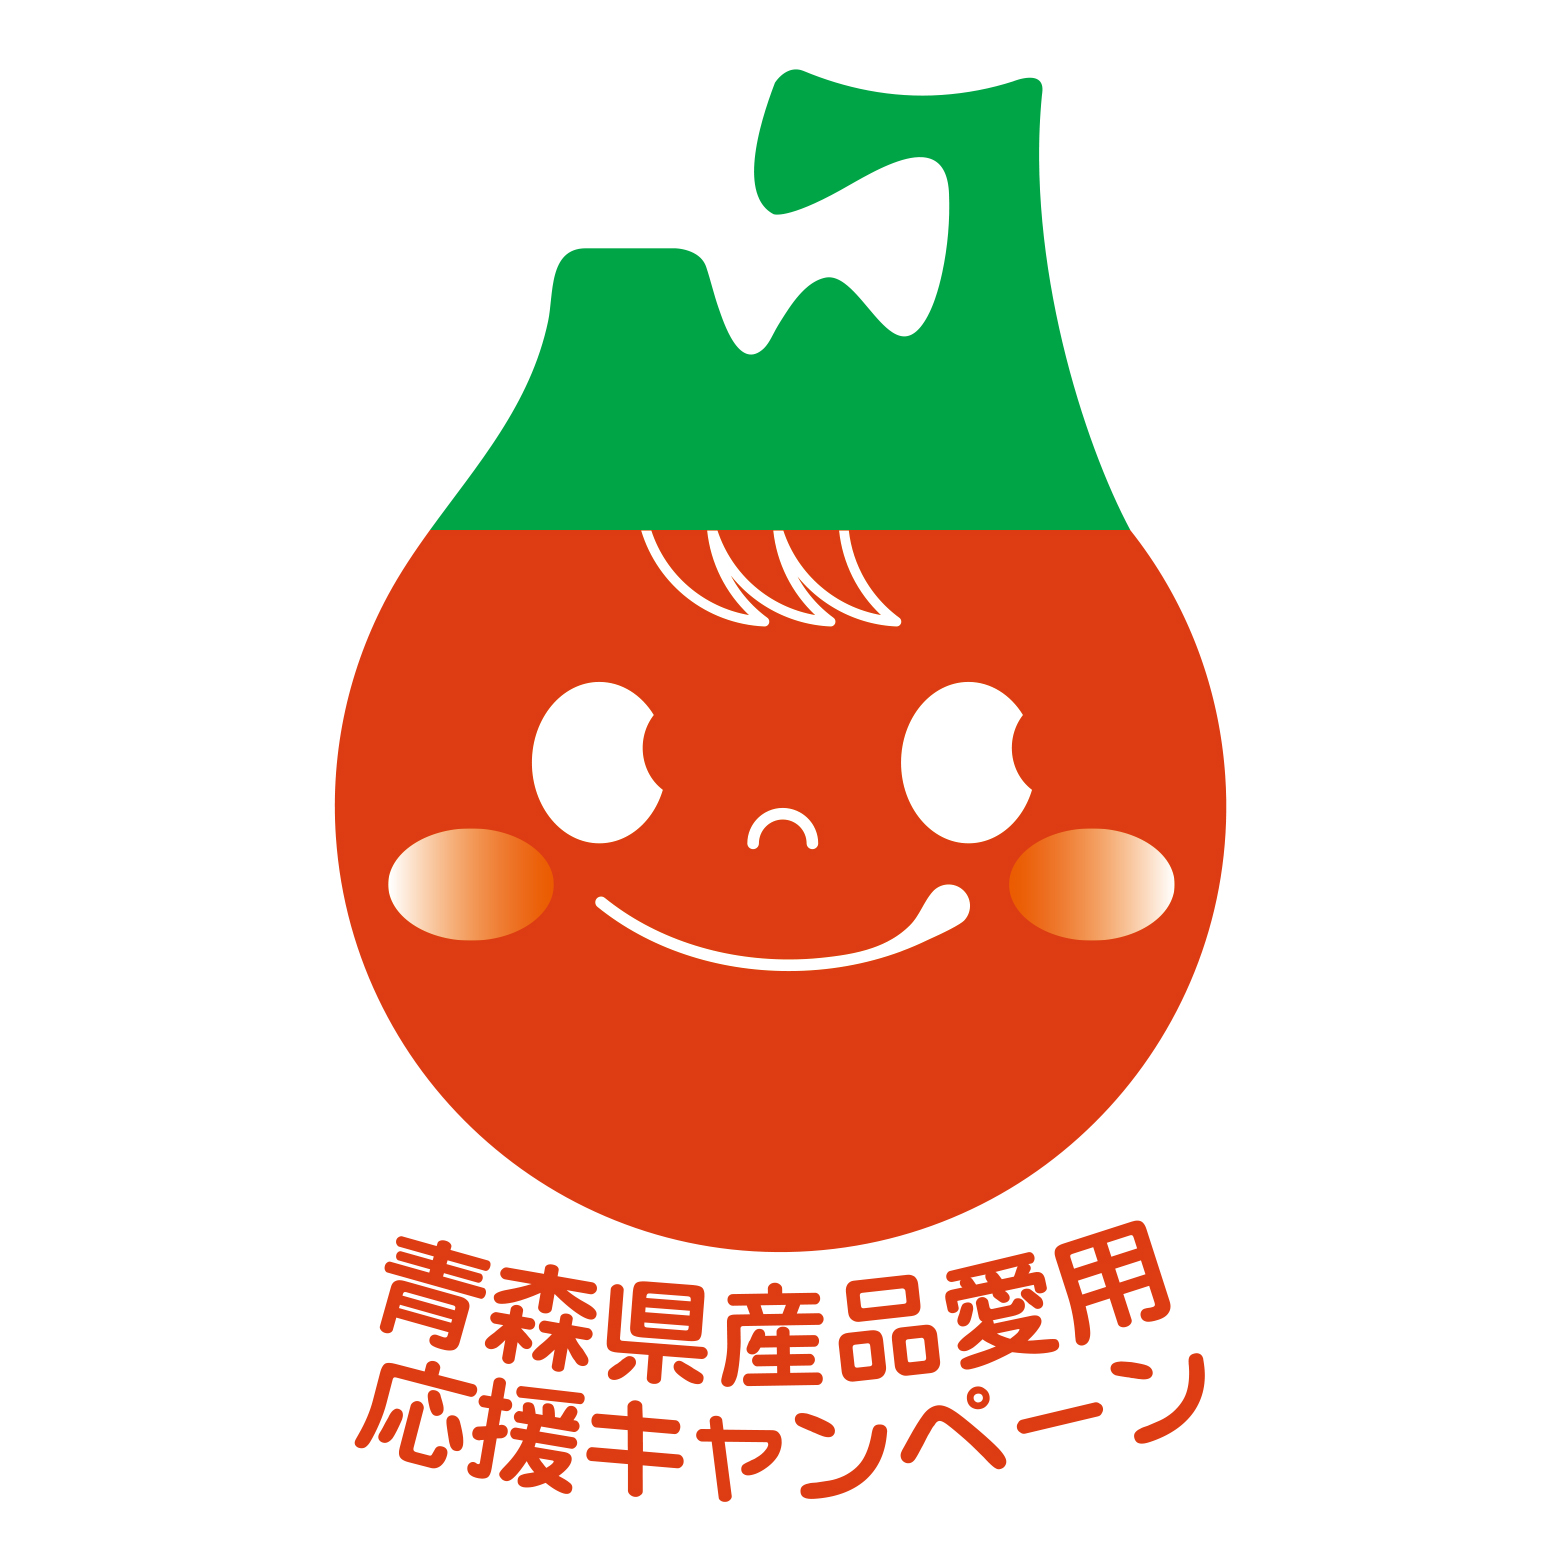 青森県産品愛用応援キャンペーン